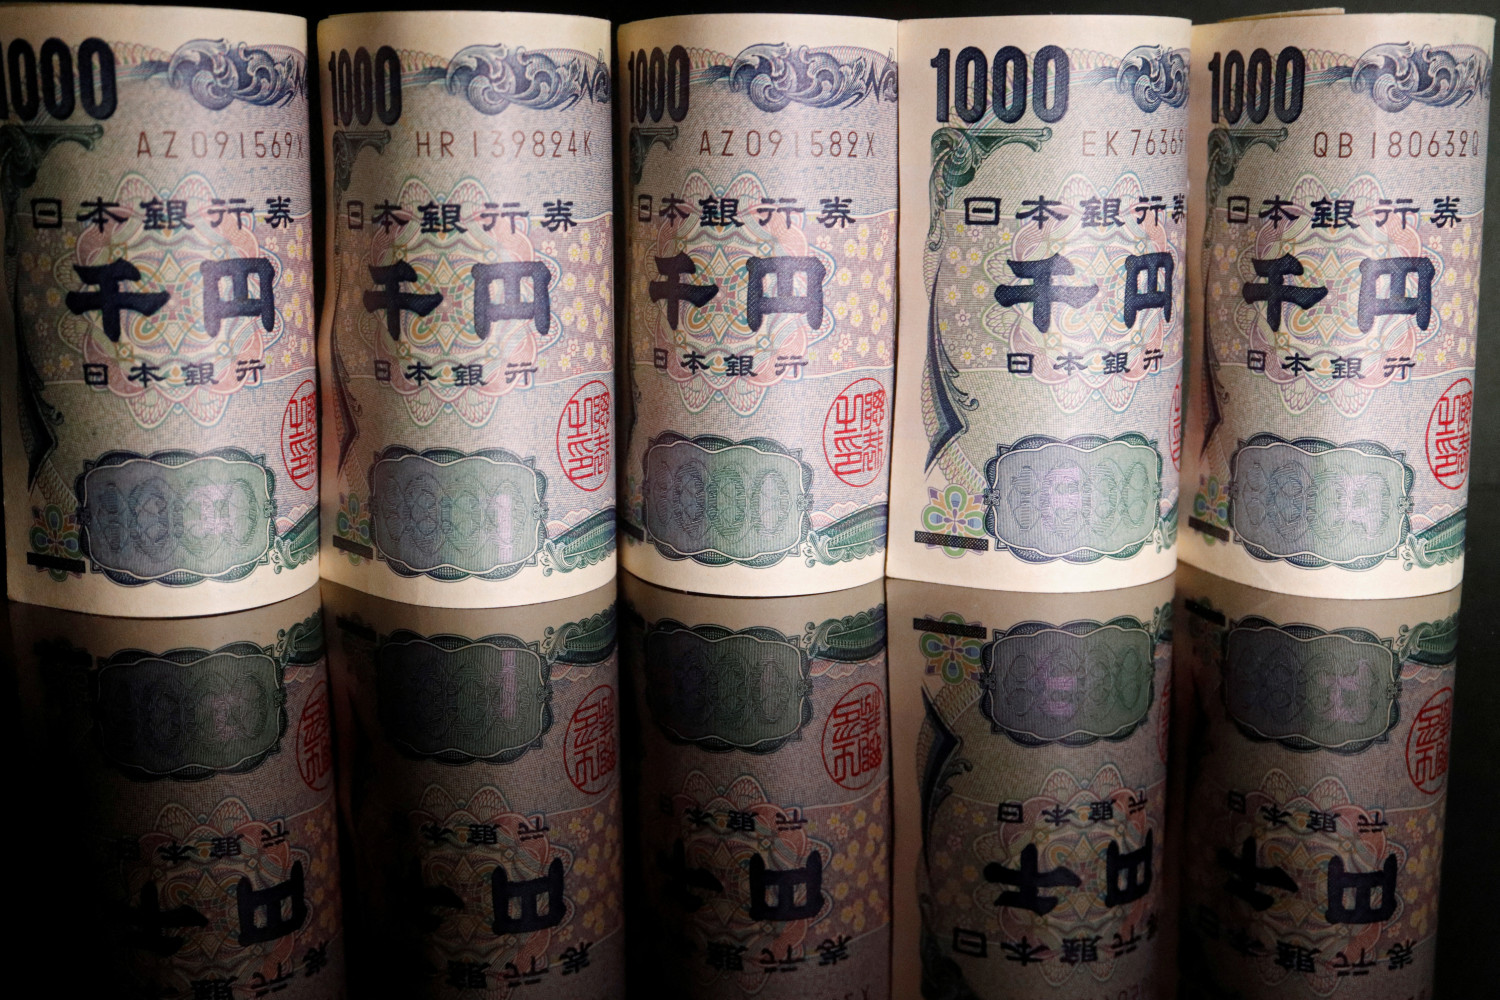 photo d illustration montrant des billets de banque en yen japonais 